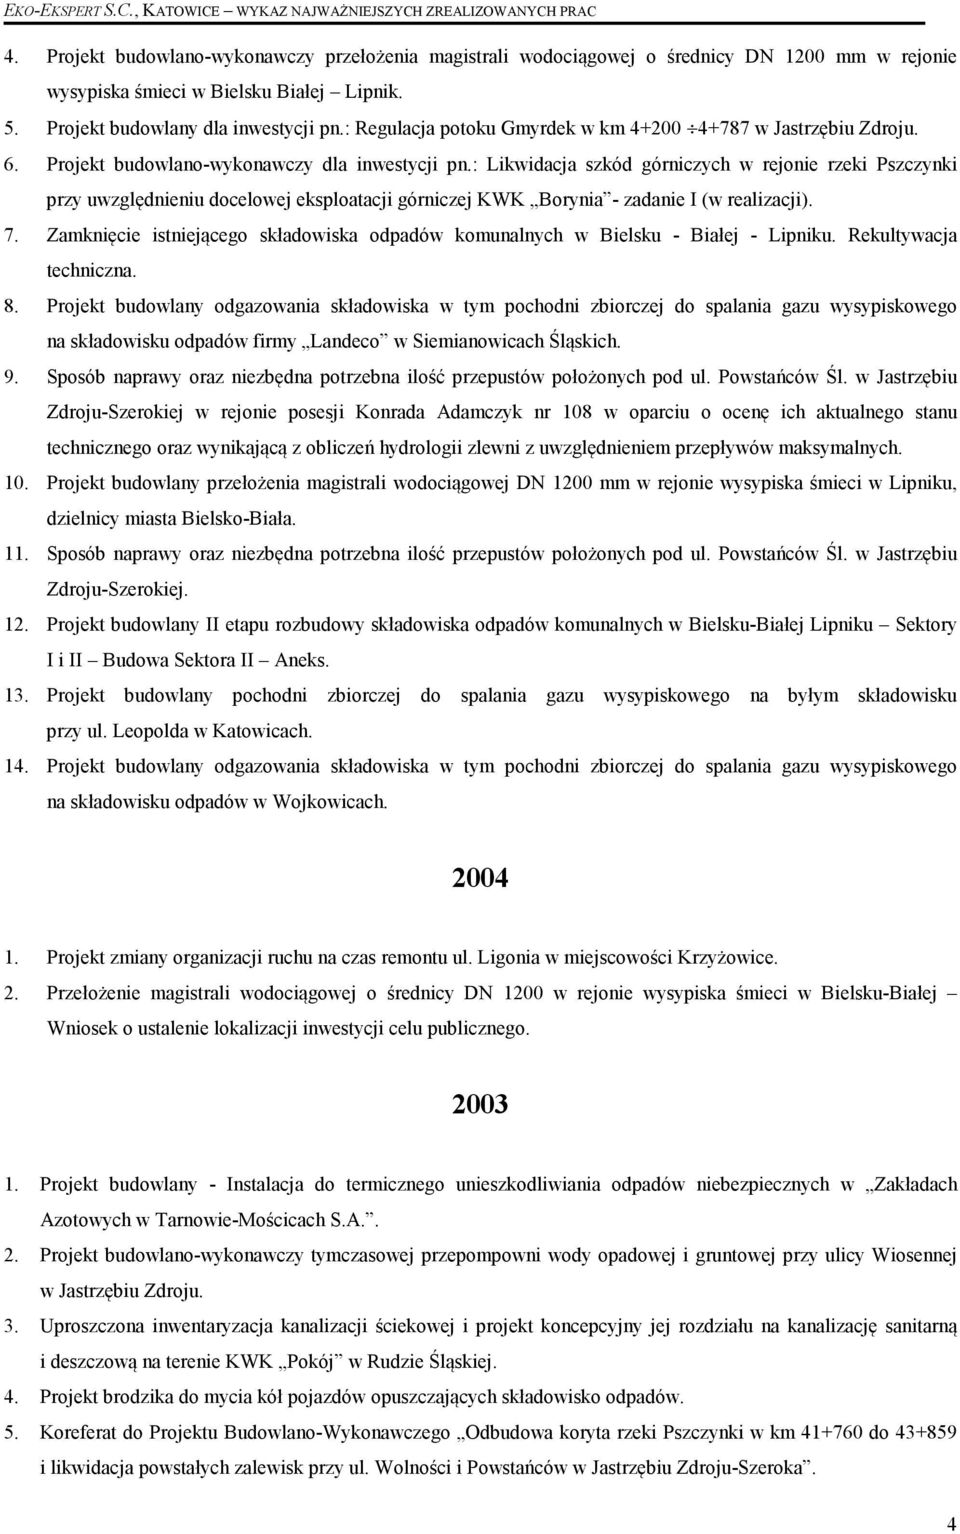 : Likwidacja szkód górniczych w rejonie rzeki Pszczynki przy uwzględnieniu docelowej eksploatacji górniczej KWK Borynia - zadanie I (w realizacji). 7.